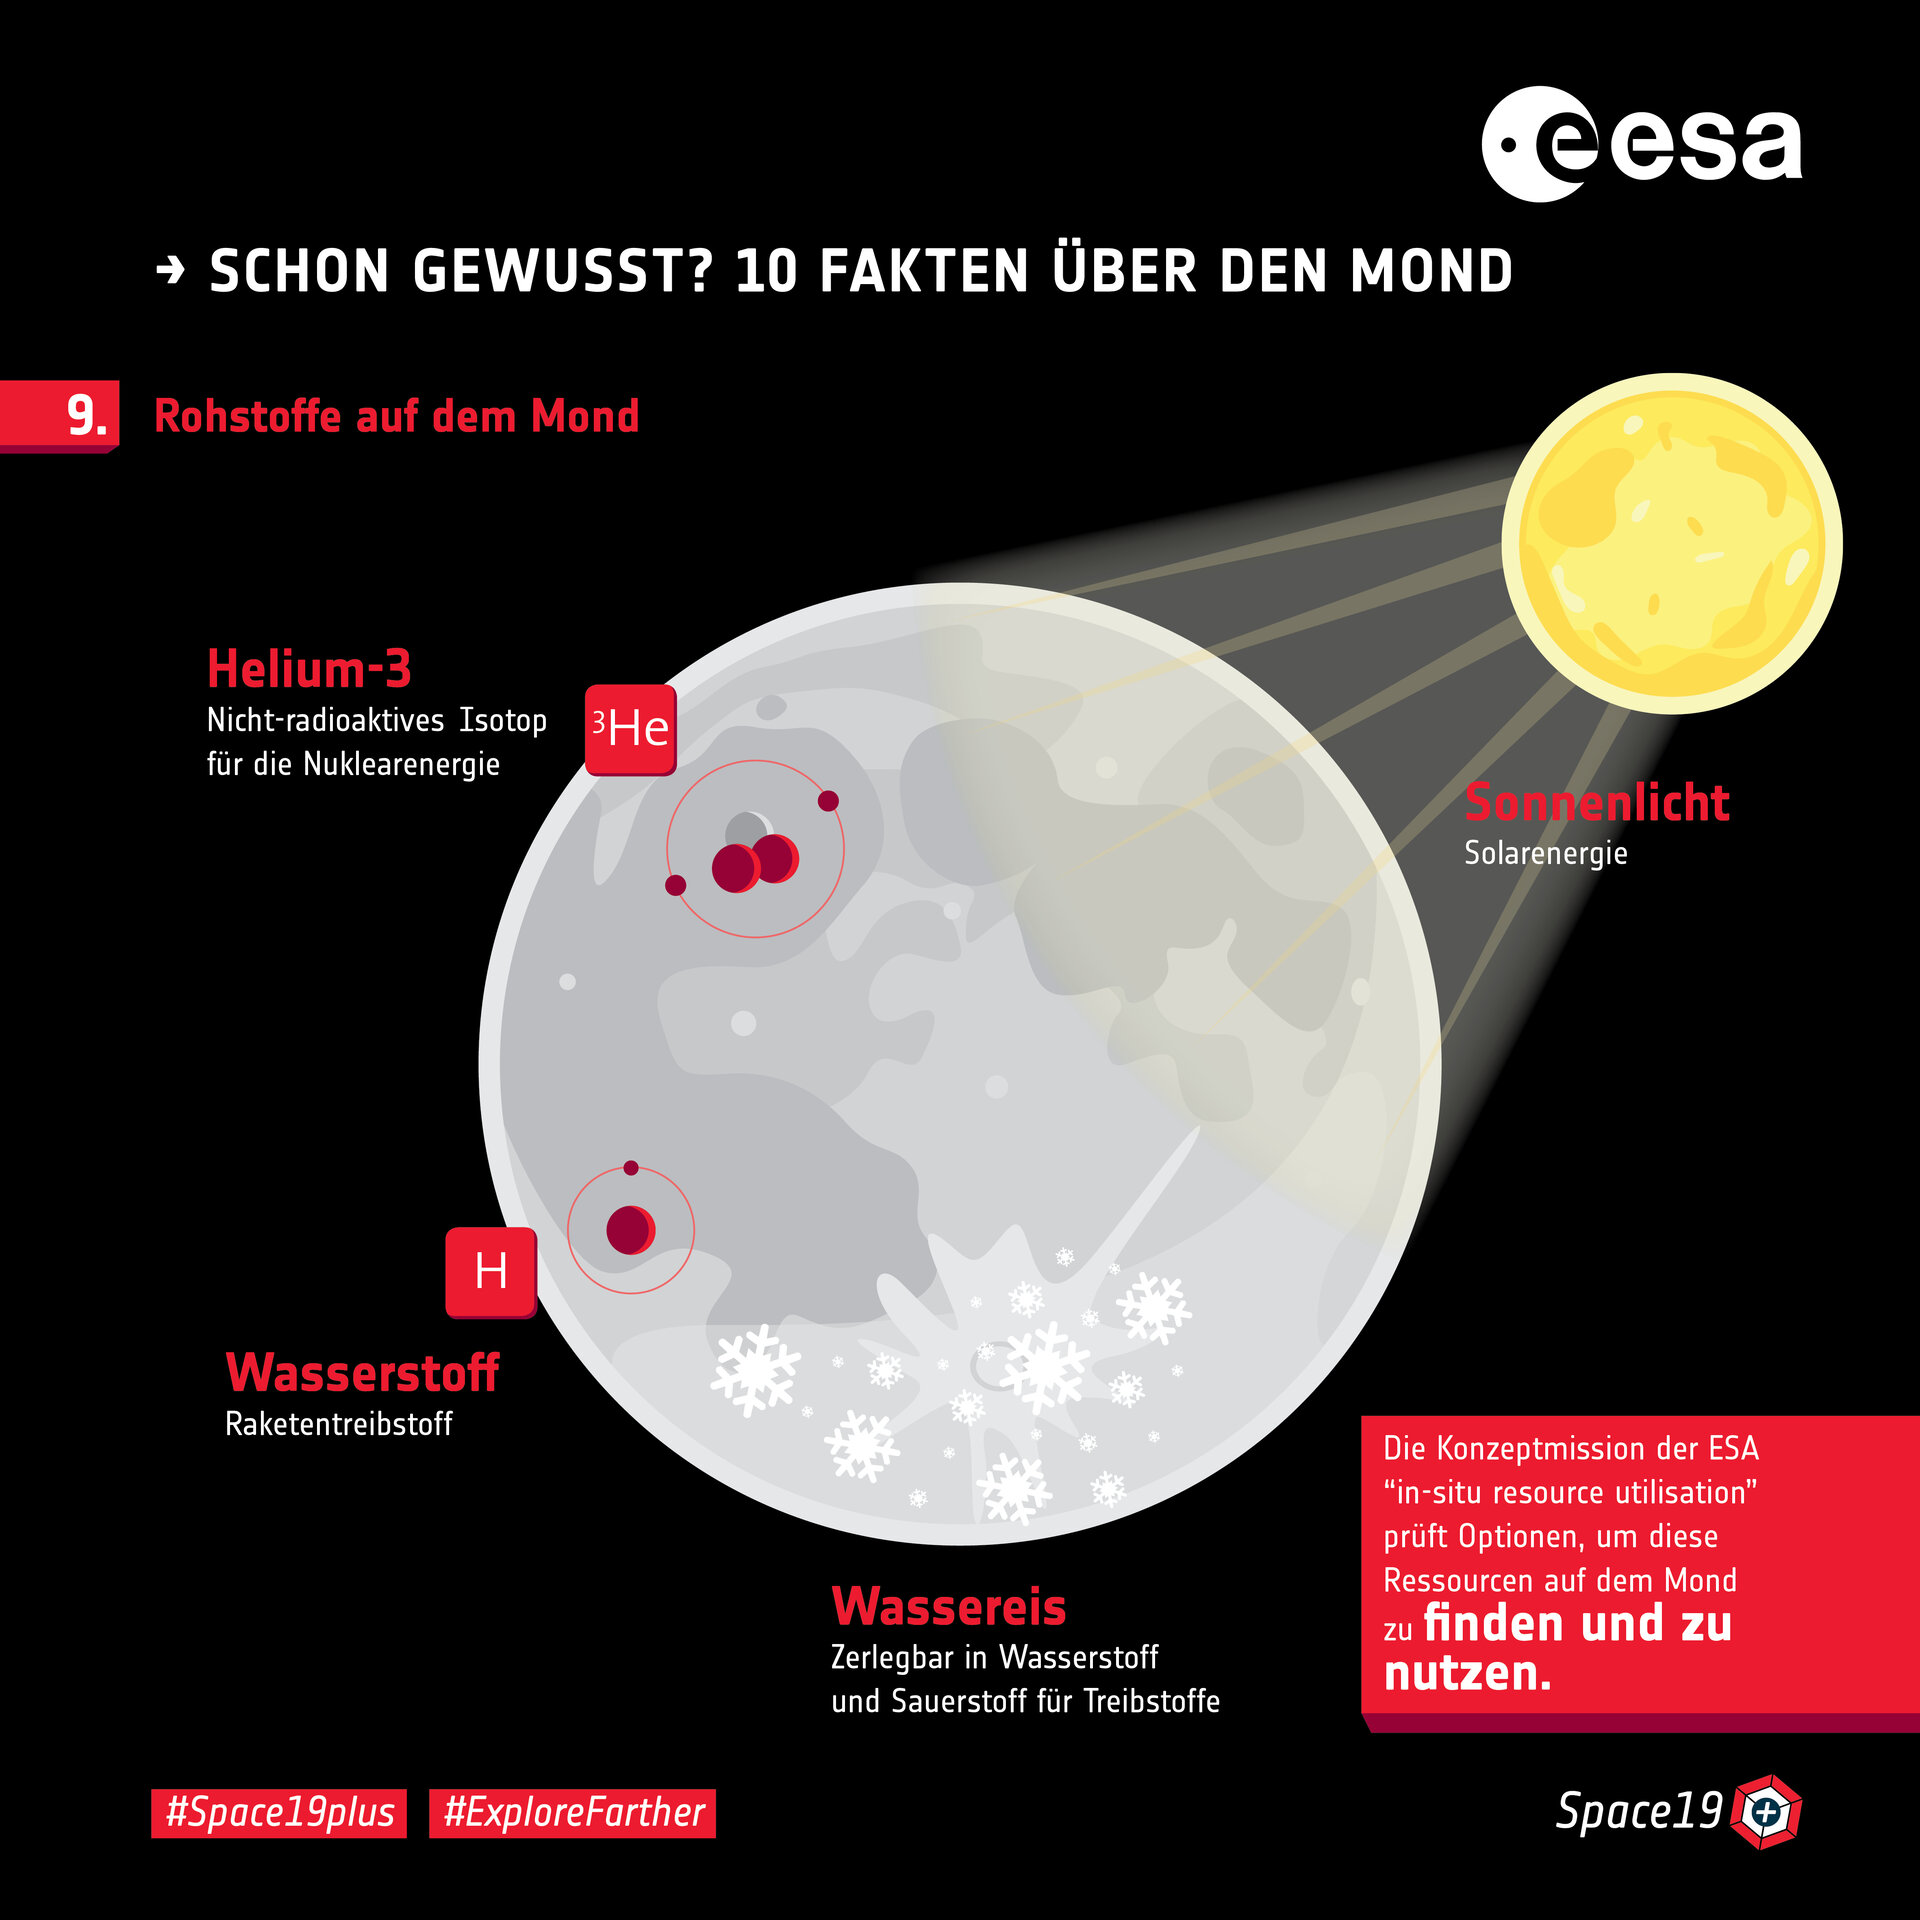 Schon gewusst? 10 Fakten über den Mond: 9. Rohstoffe